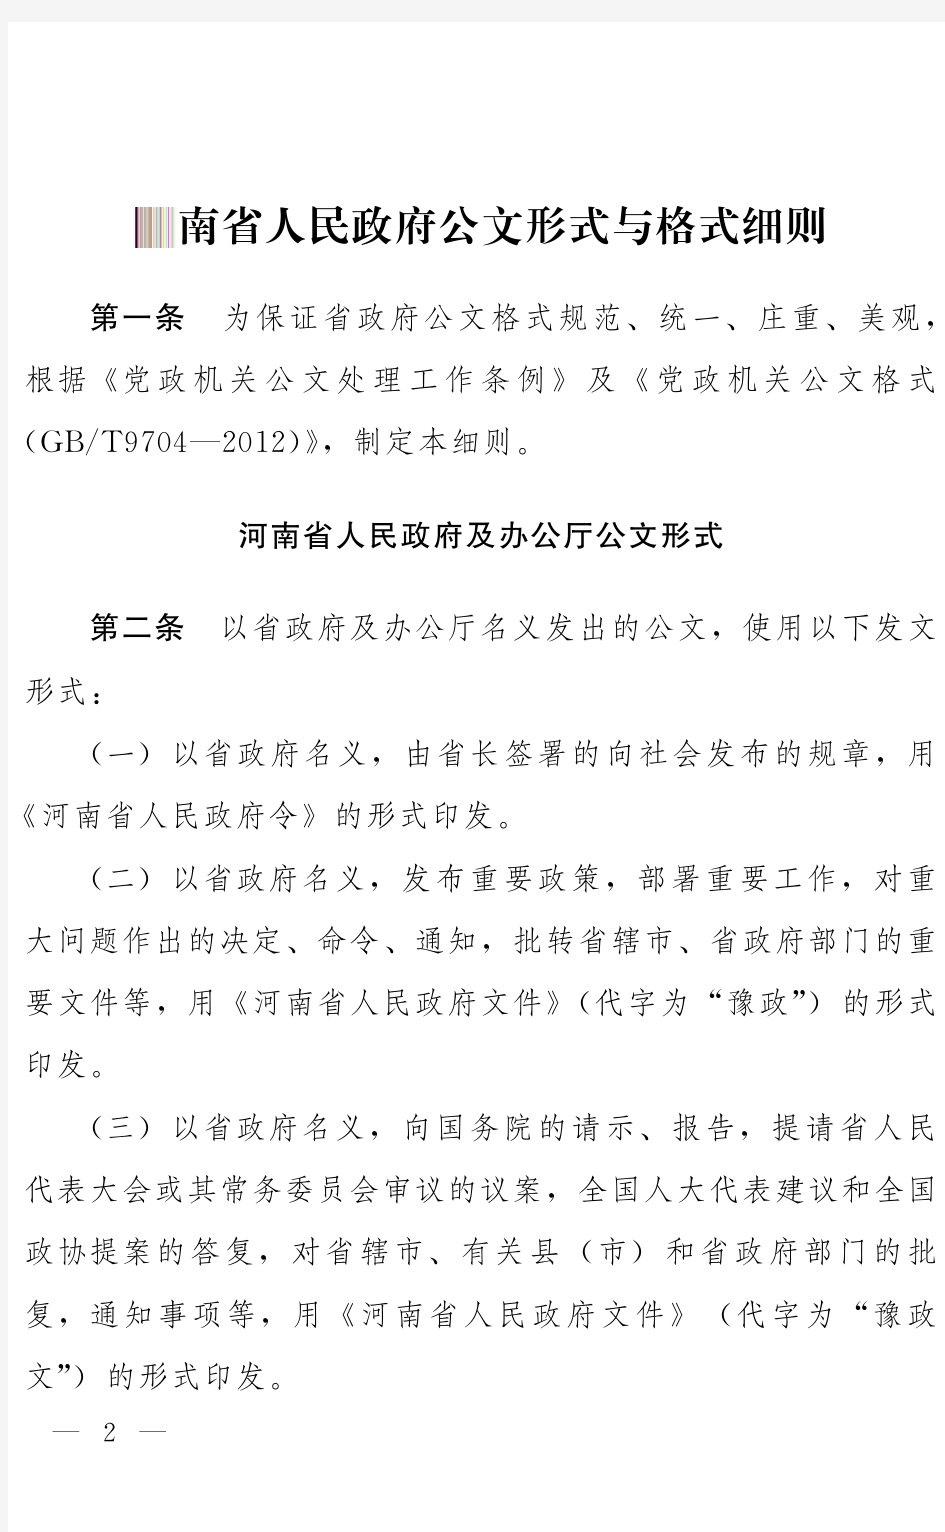 河南省人民政府公文形式与格式细则